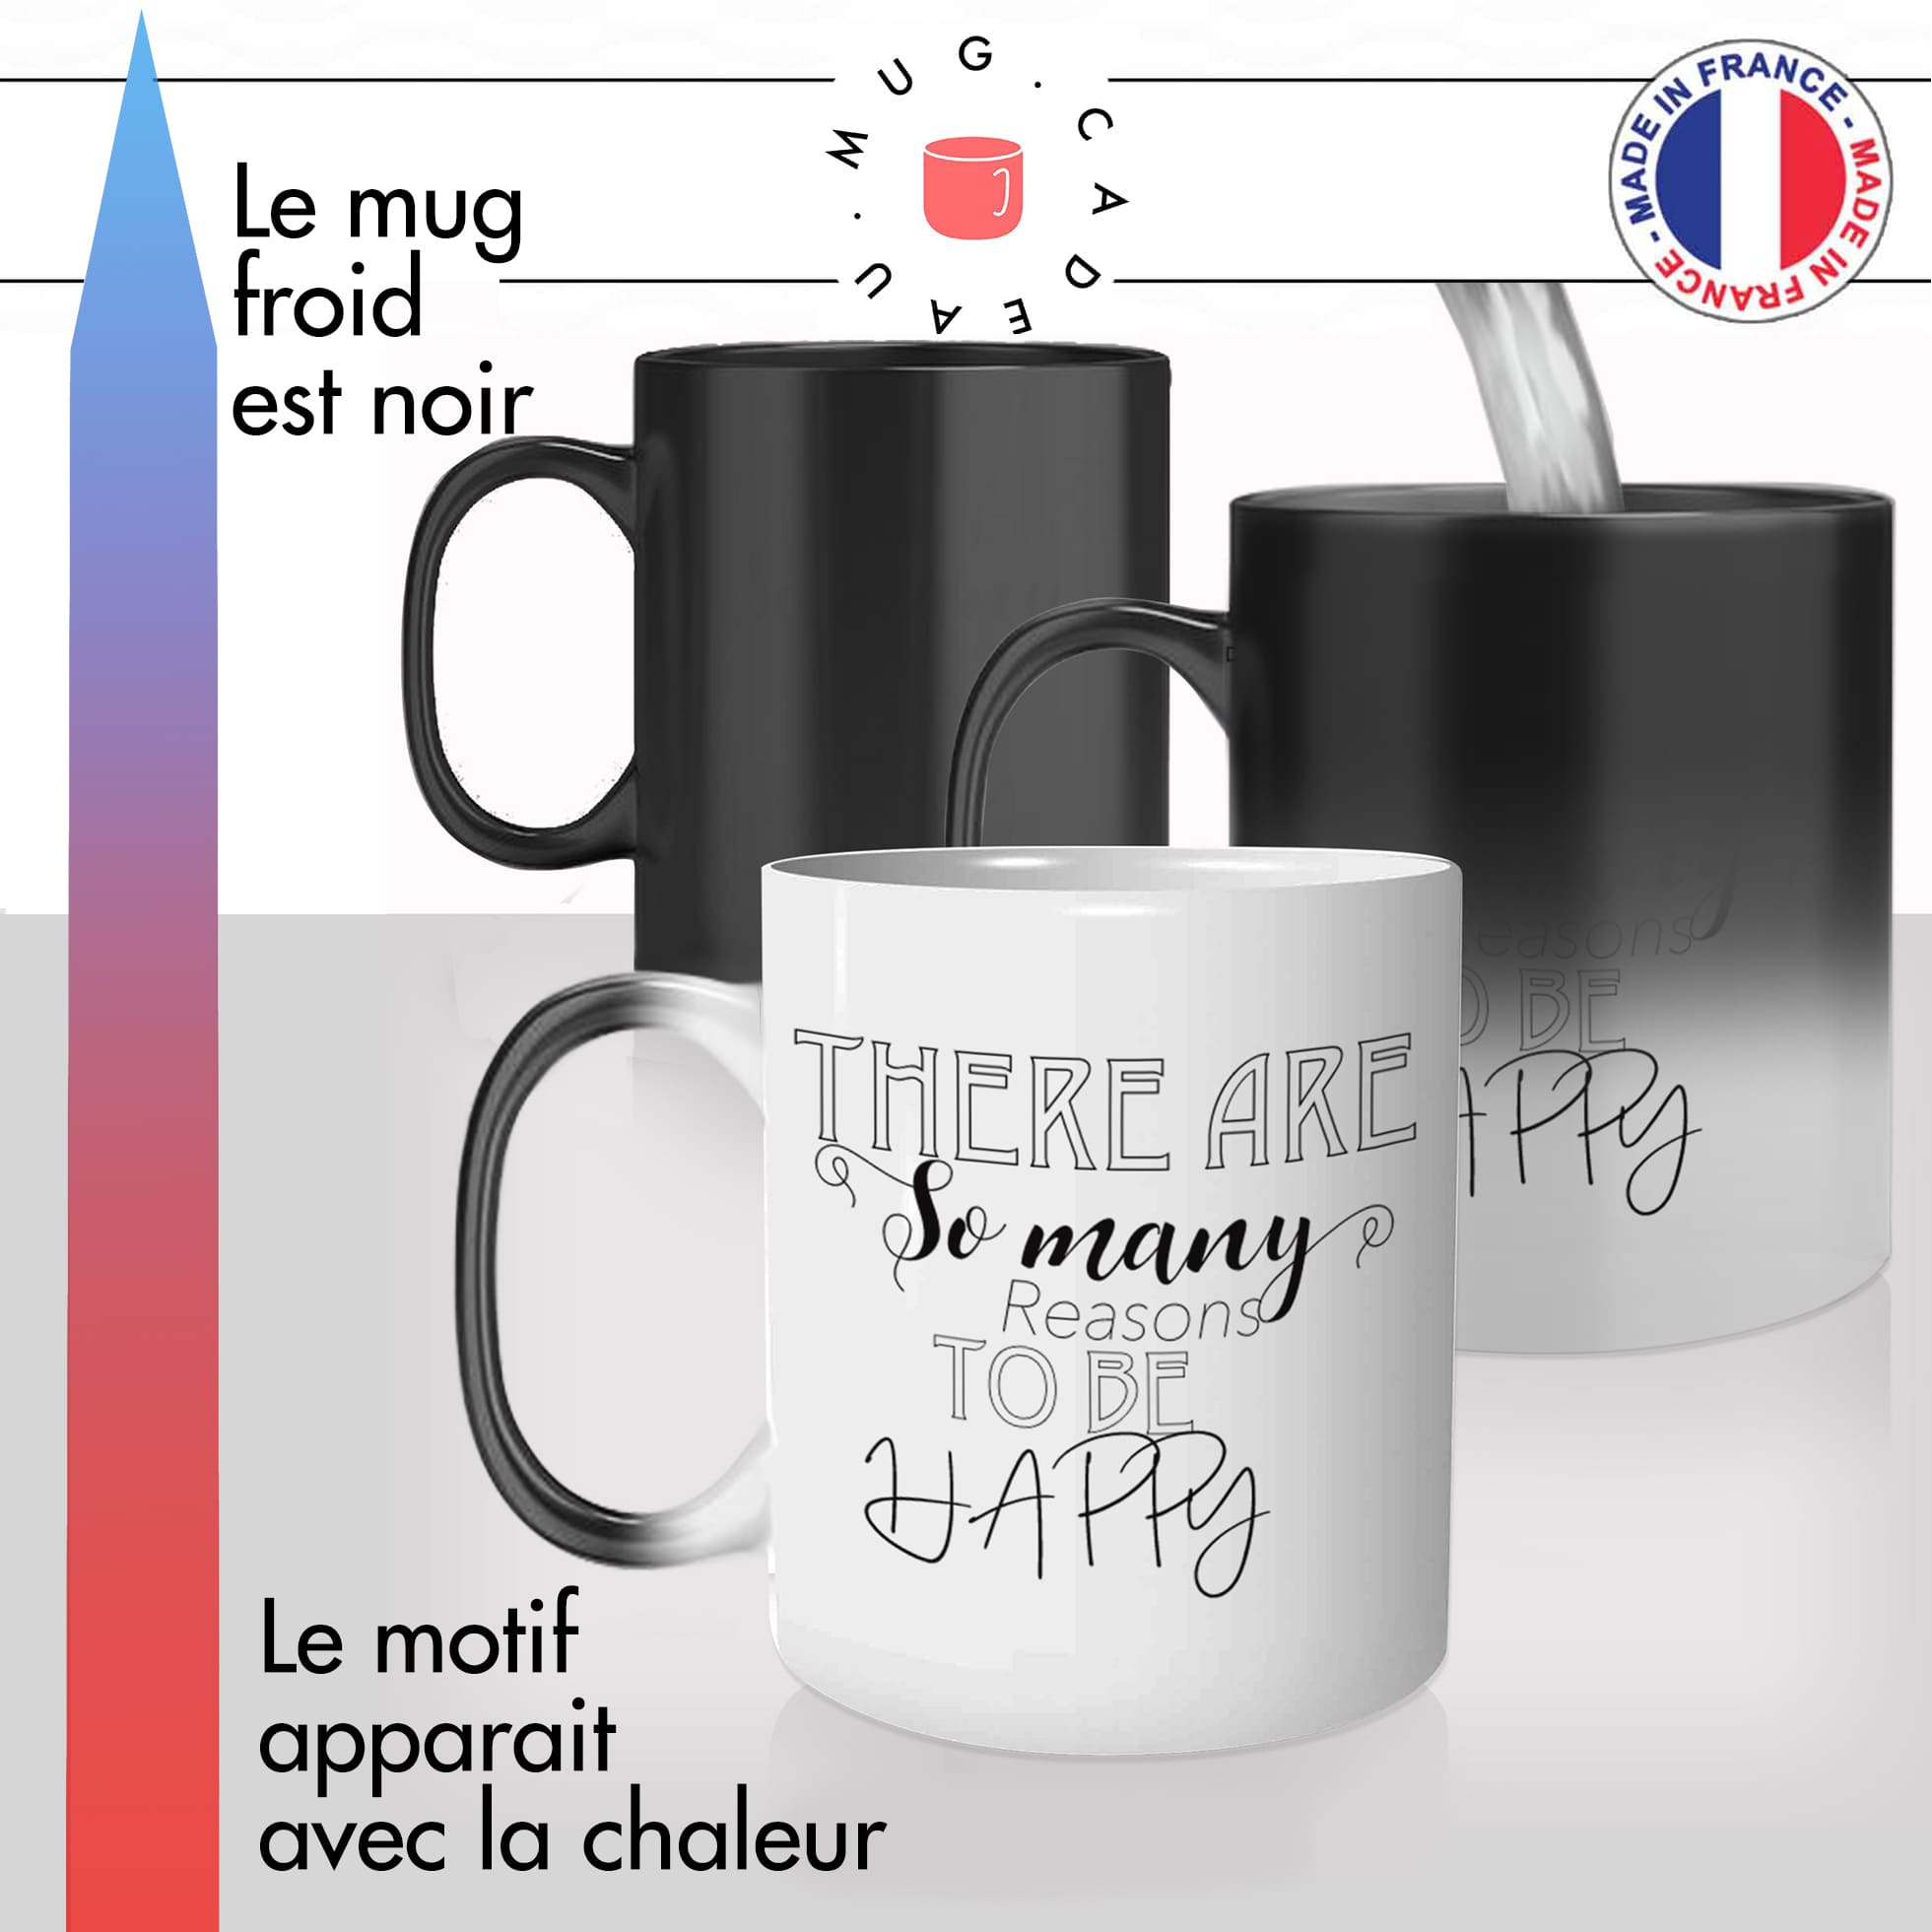 mug magique thermoréactif thermo chauffant citation bonheur positive habby personnalisable idée cadeau fun cool original